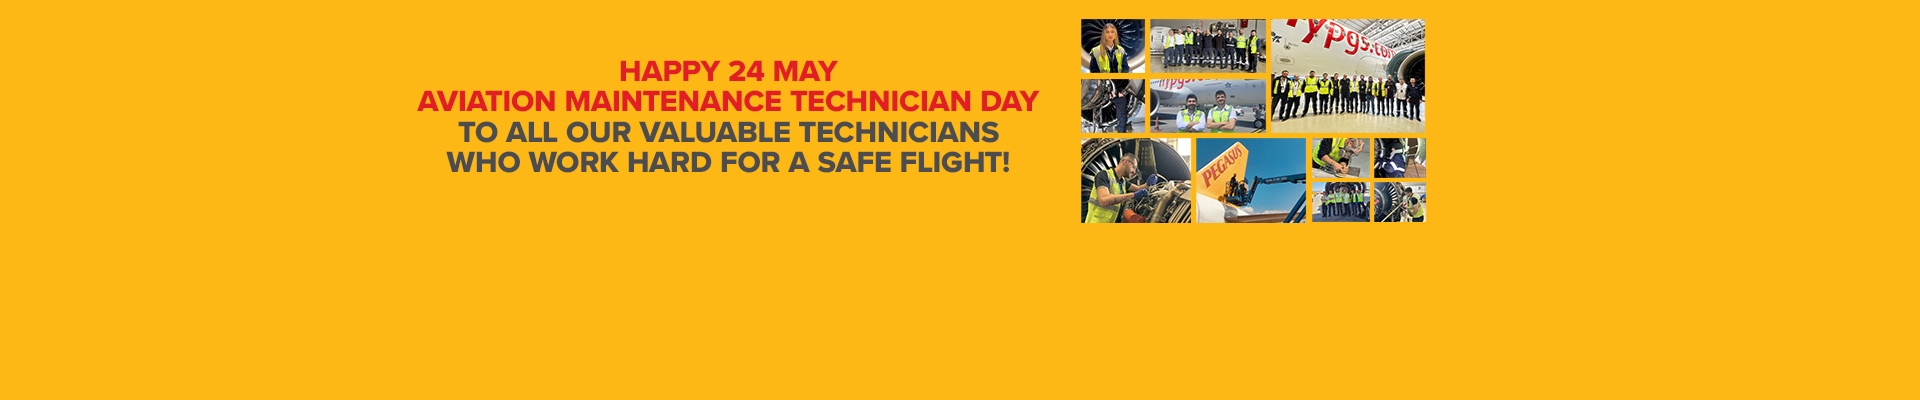 Happy 24 May Aviation Maintenance Technician Day!